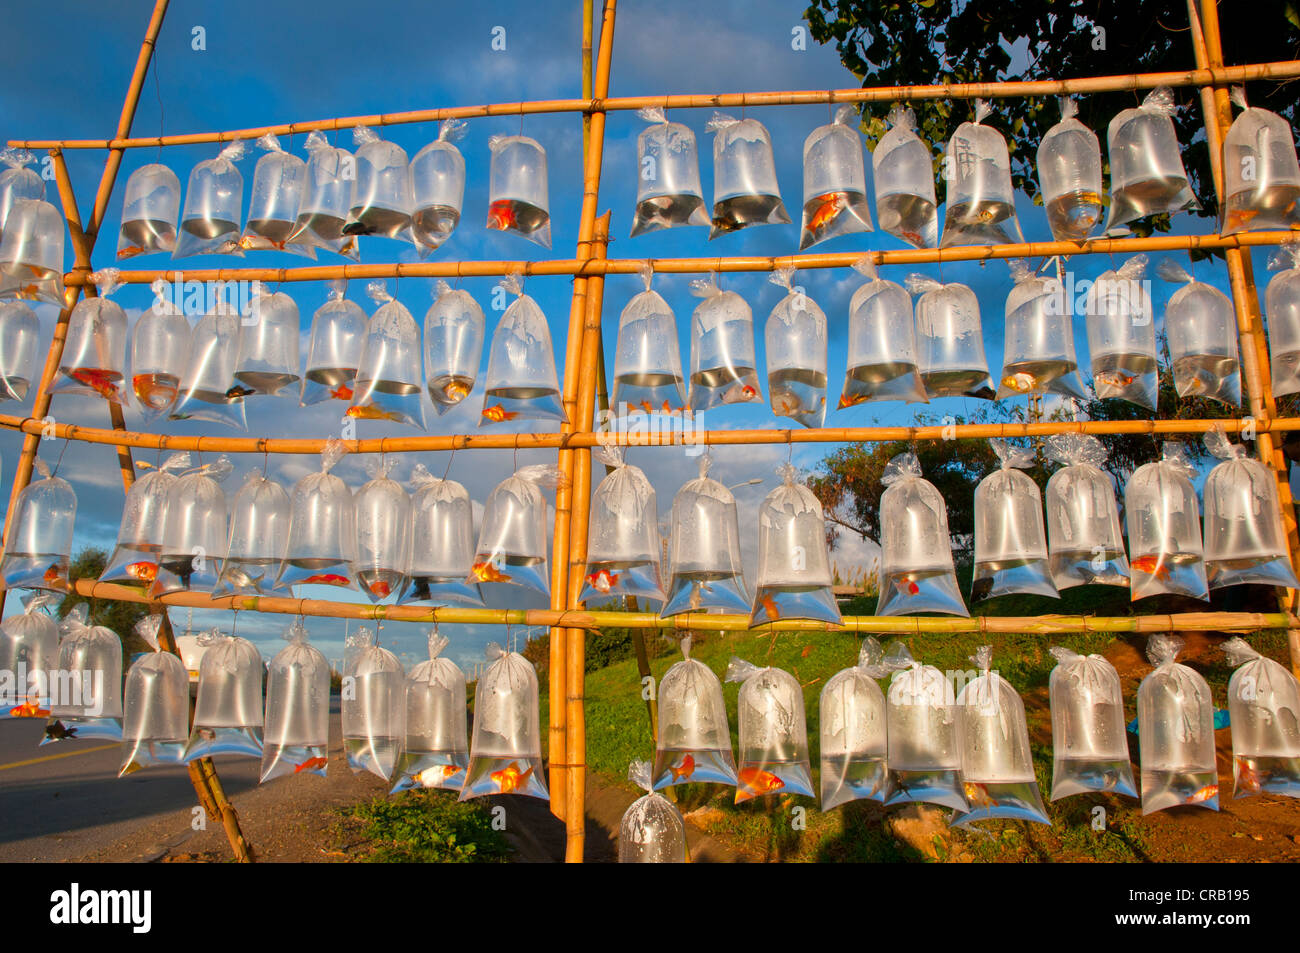 Les poissons d'ornement pour la vente dans des sacs en plastique, de Cherchell, en Algérie, l'Afrique Banque D'Images